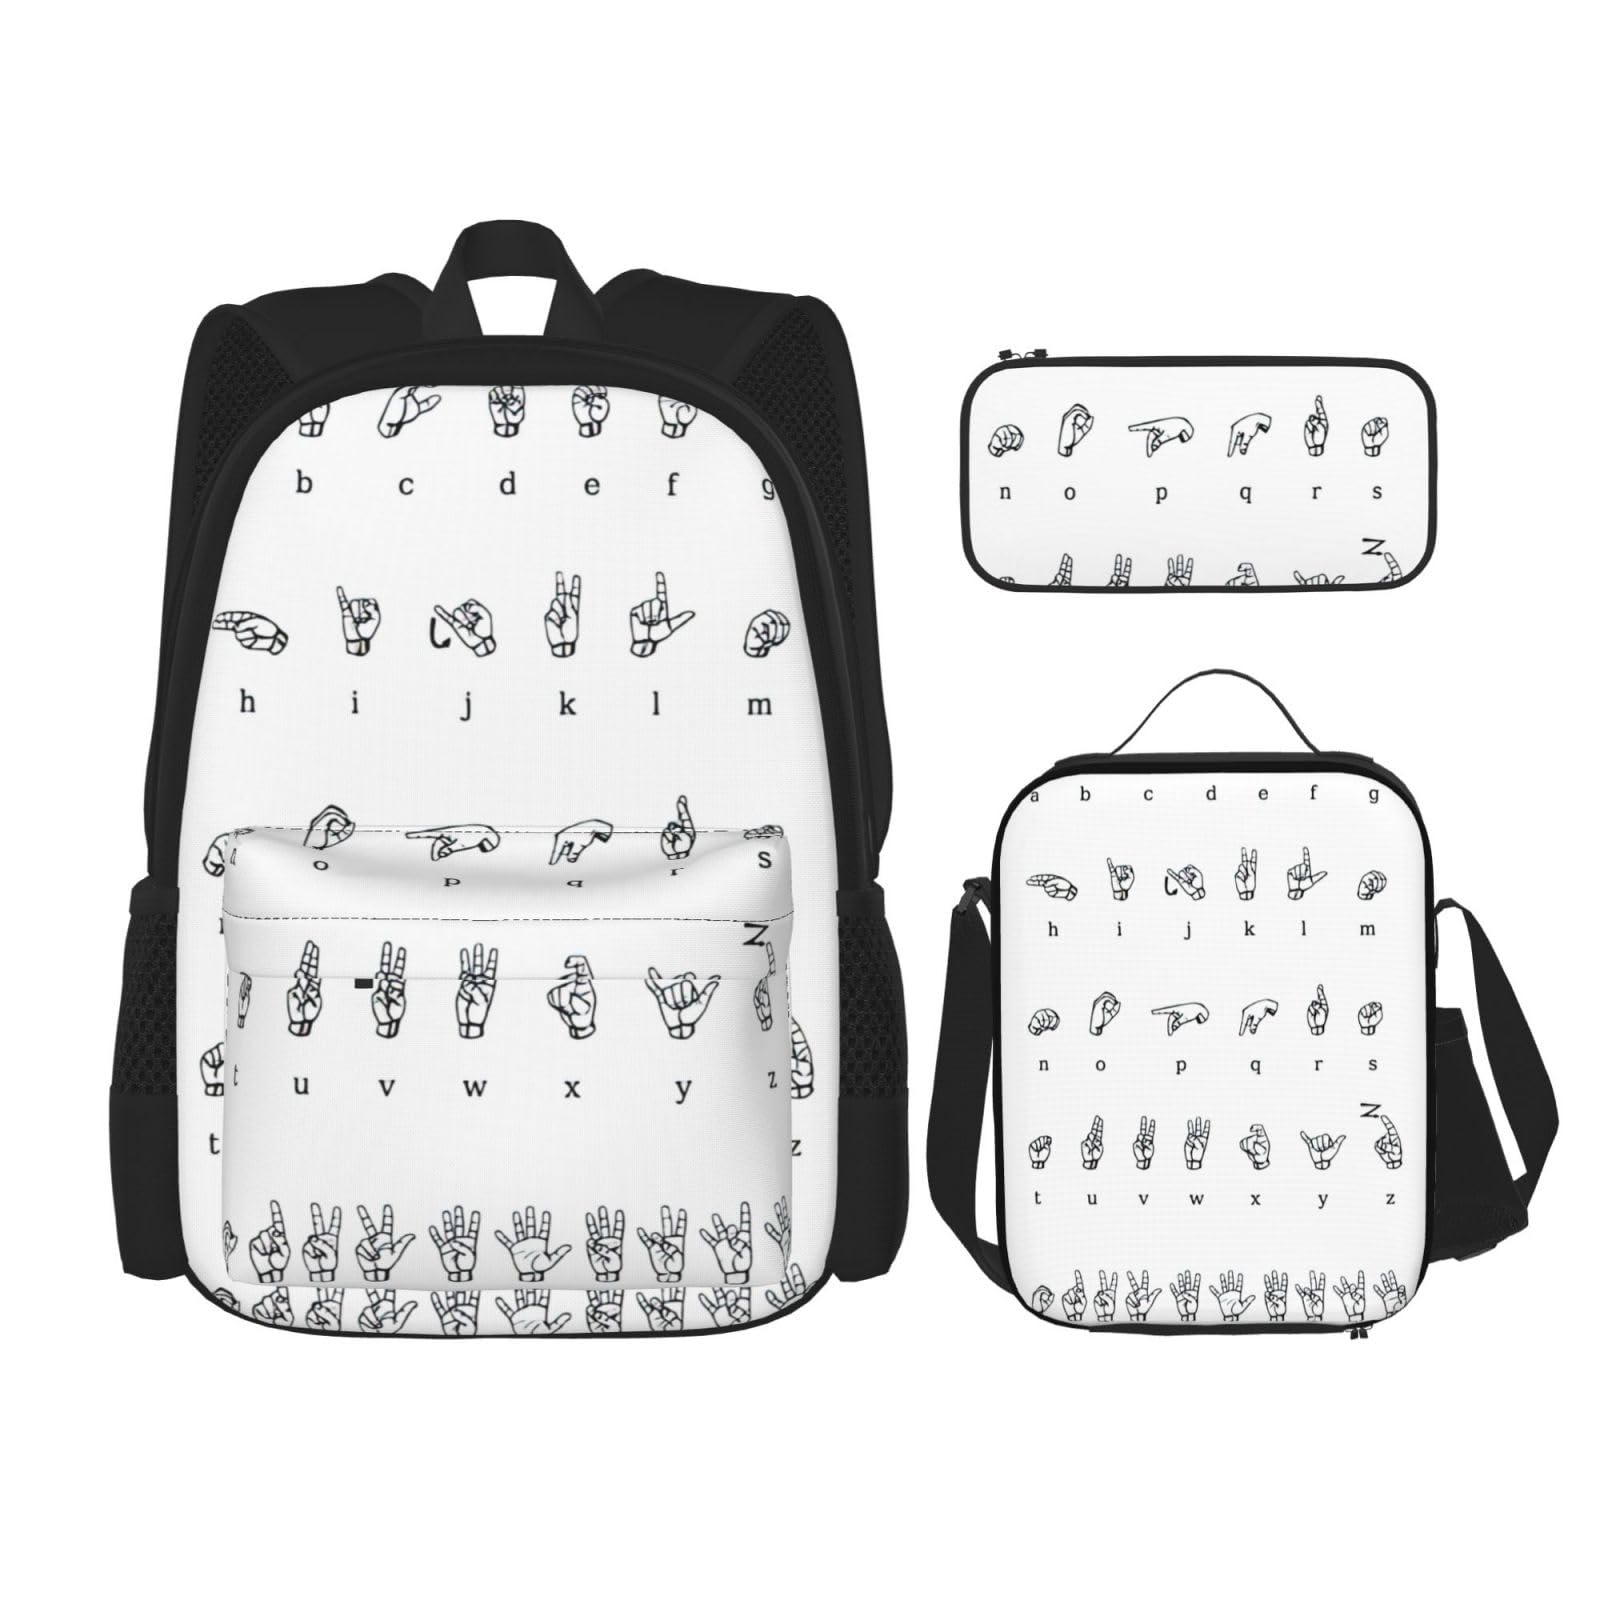 送料無料NEZIH Sign Language Alphabet Backpack Travel Daypack With Lunch Box Pencil Bag 3 Pcs Set Casual Rucksack Fashion